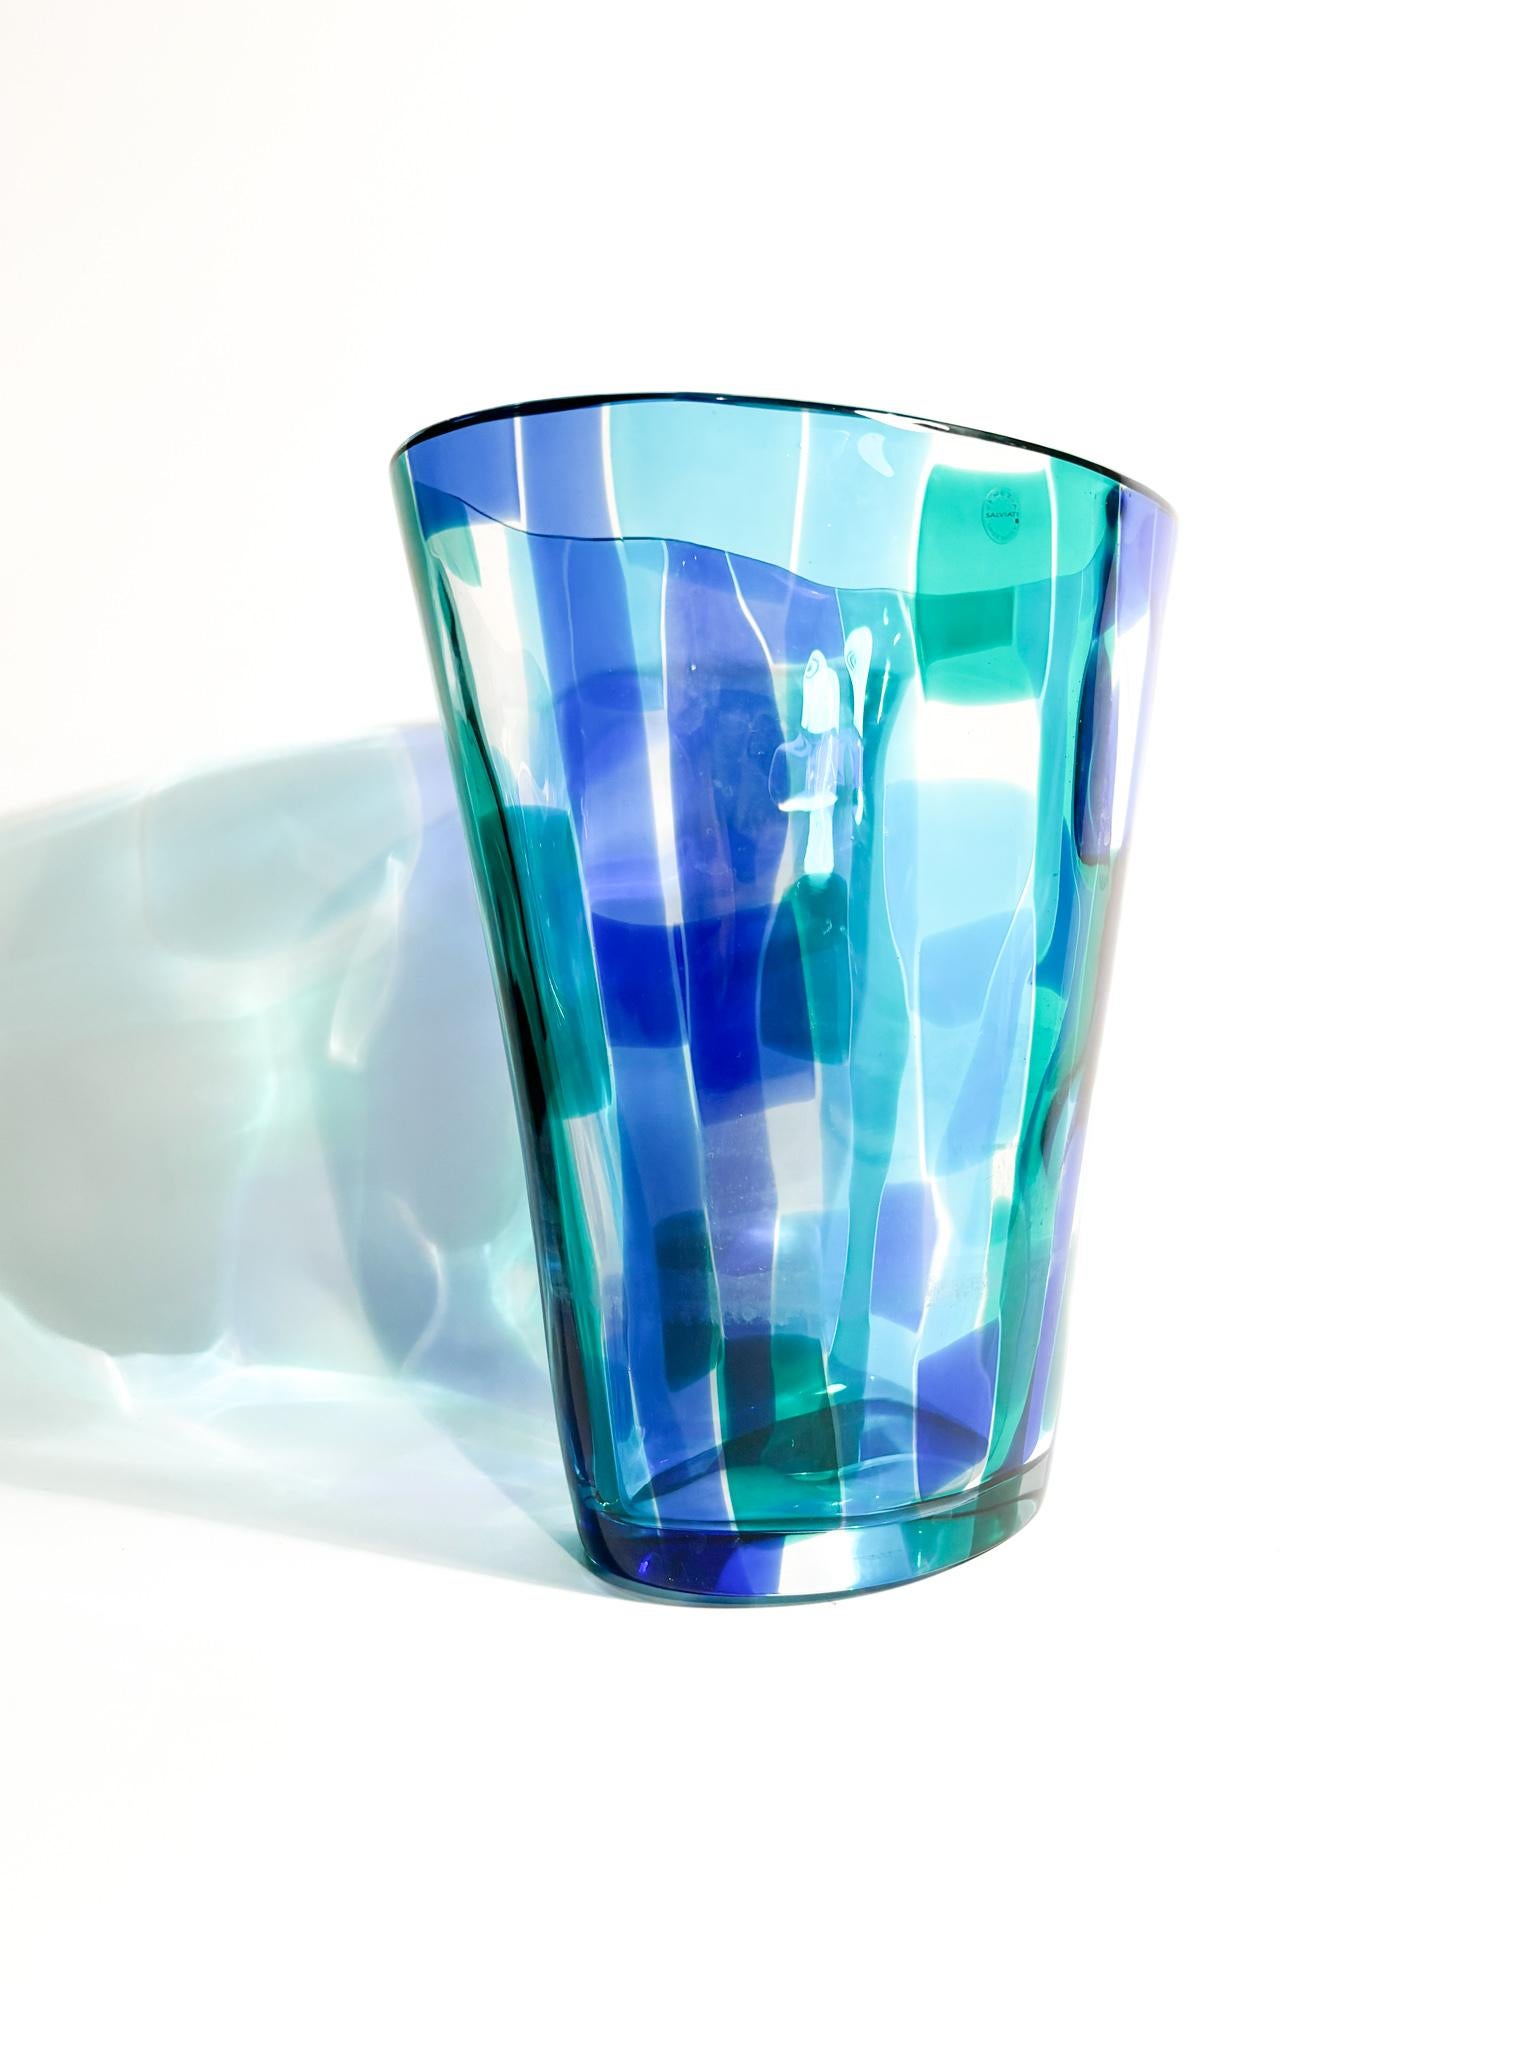 Vase aus Murano-Glas mit blauen und grünen Schattierungen, Madras Collection, hergestellt von Vetreria Salviati im Jahr 1997

Ø 22 cm Ø 15 cm h 26 cm

Salviati ist ein renommiertes Glasunternehmen mit Sitz in Murano, Italien. Das Unternehmen wurde